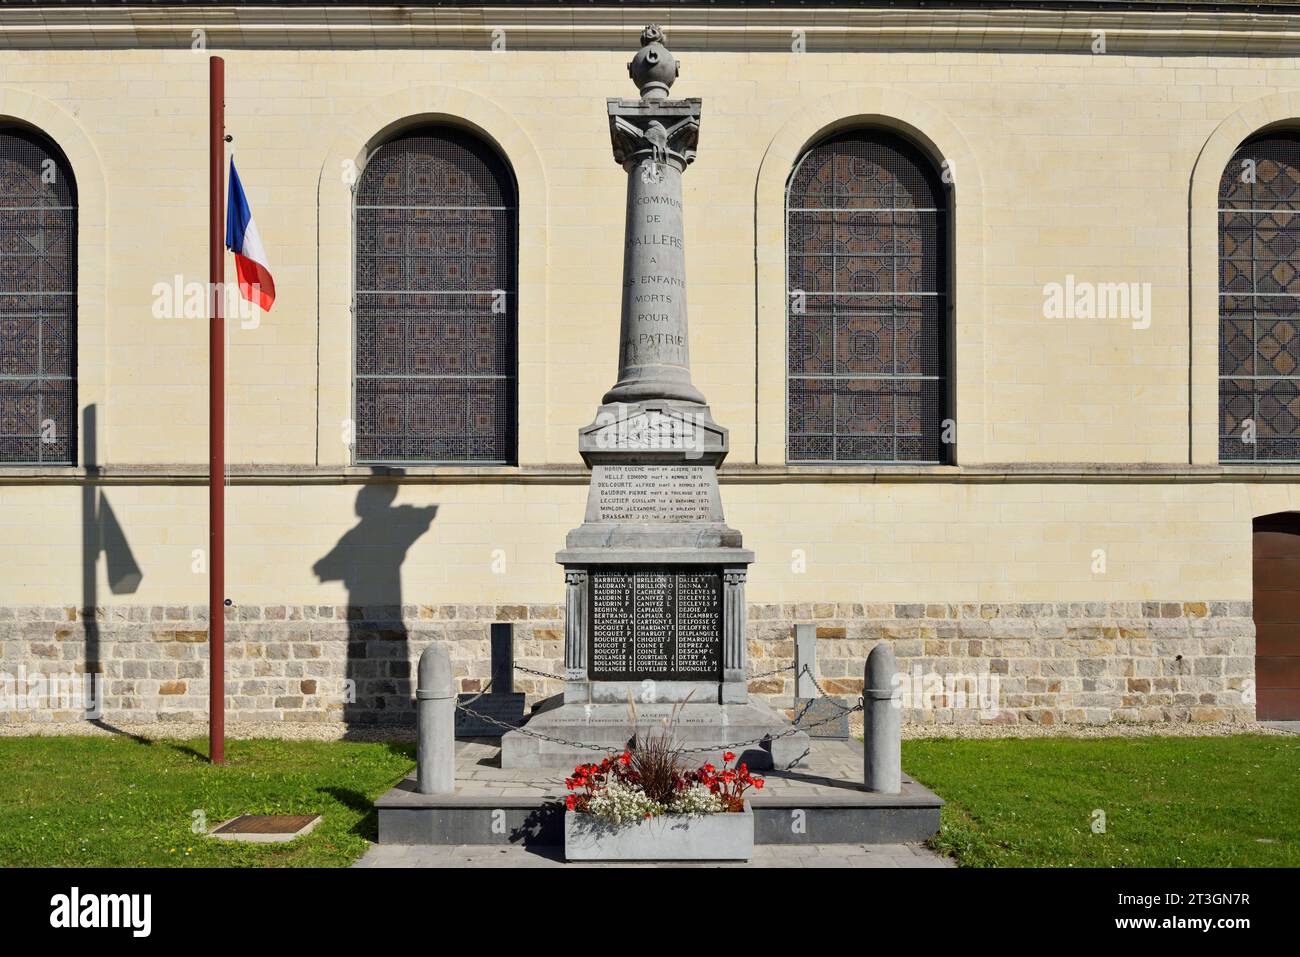 Francia, Norte, monumento de guerra frente a la iglesia de san vaast de Wallers Foto de stock